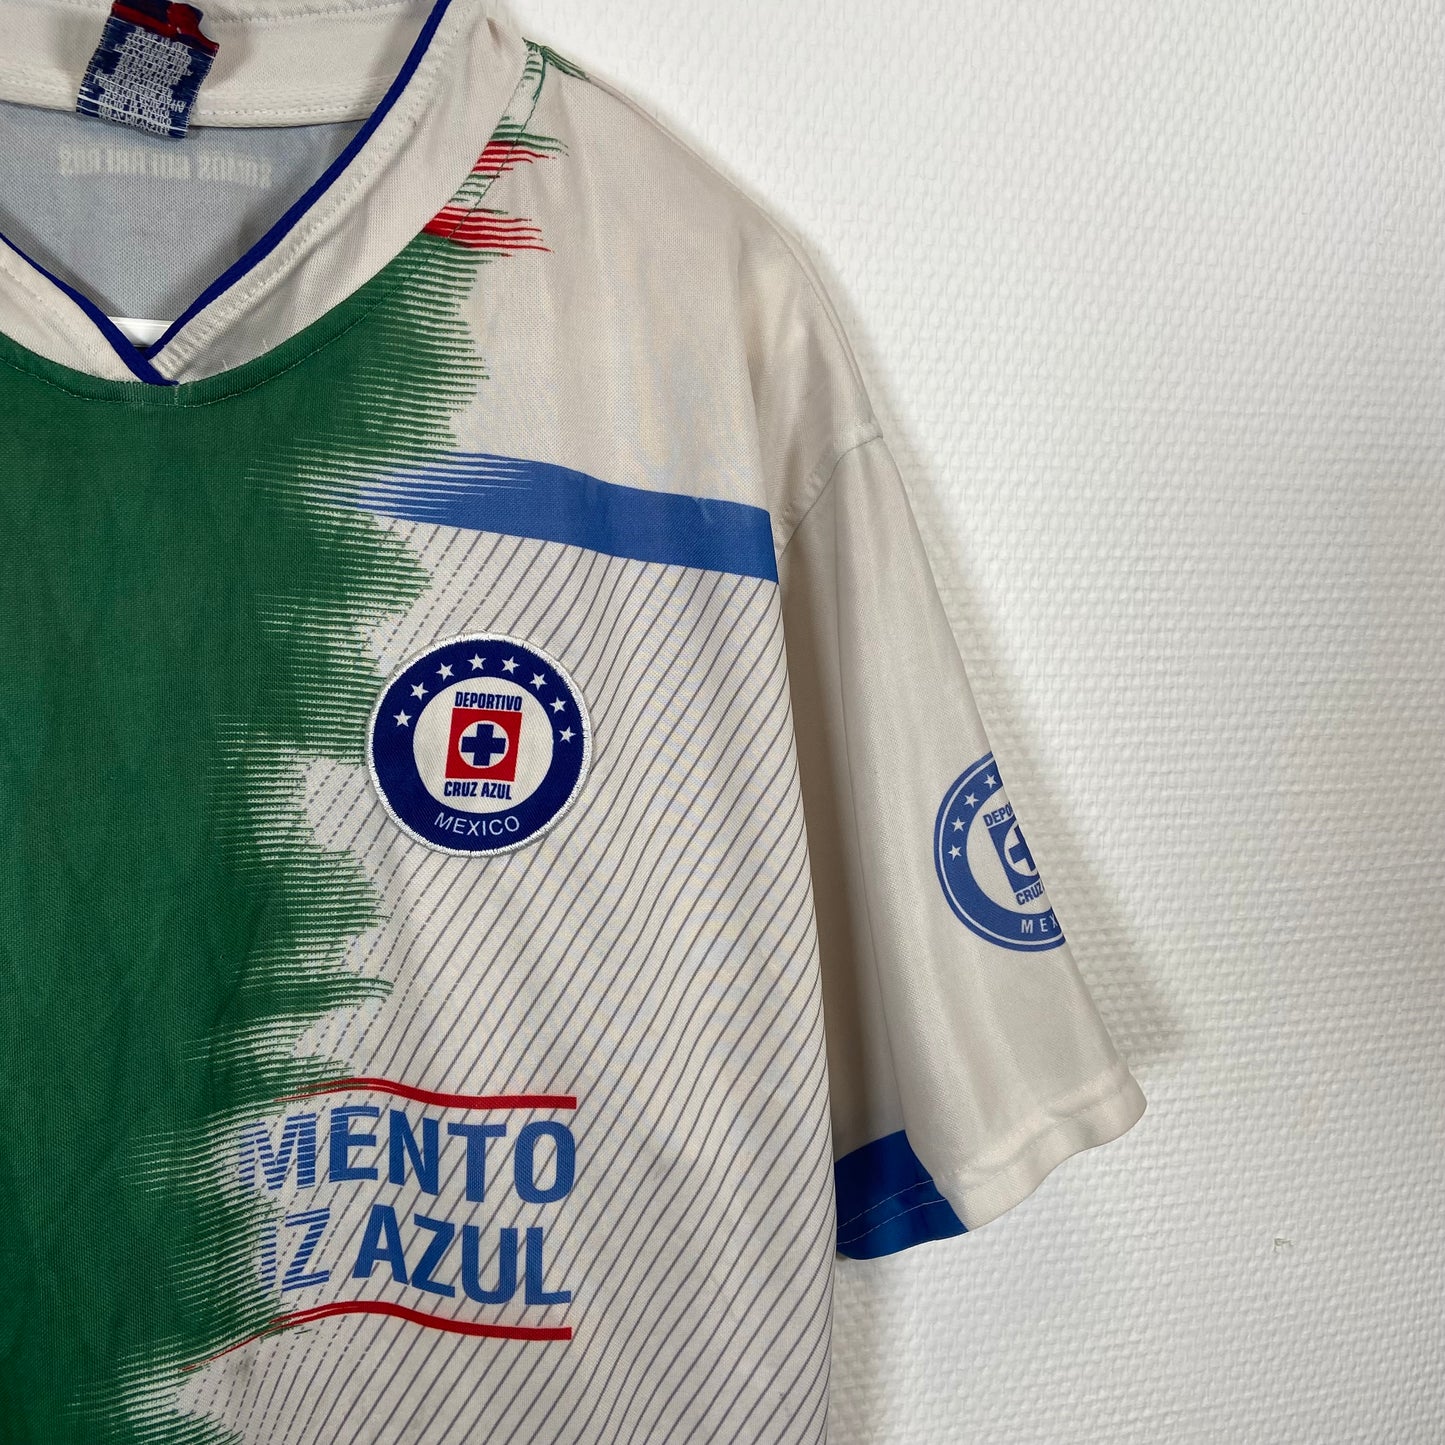 Maillot non brandé Cruz Azul Mexico - L